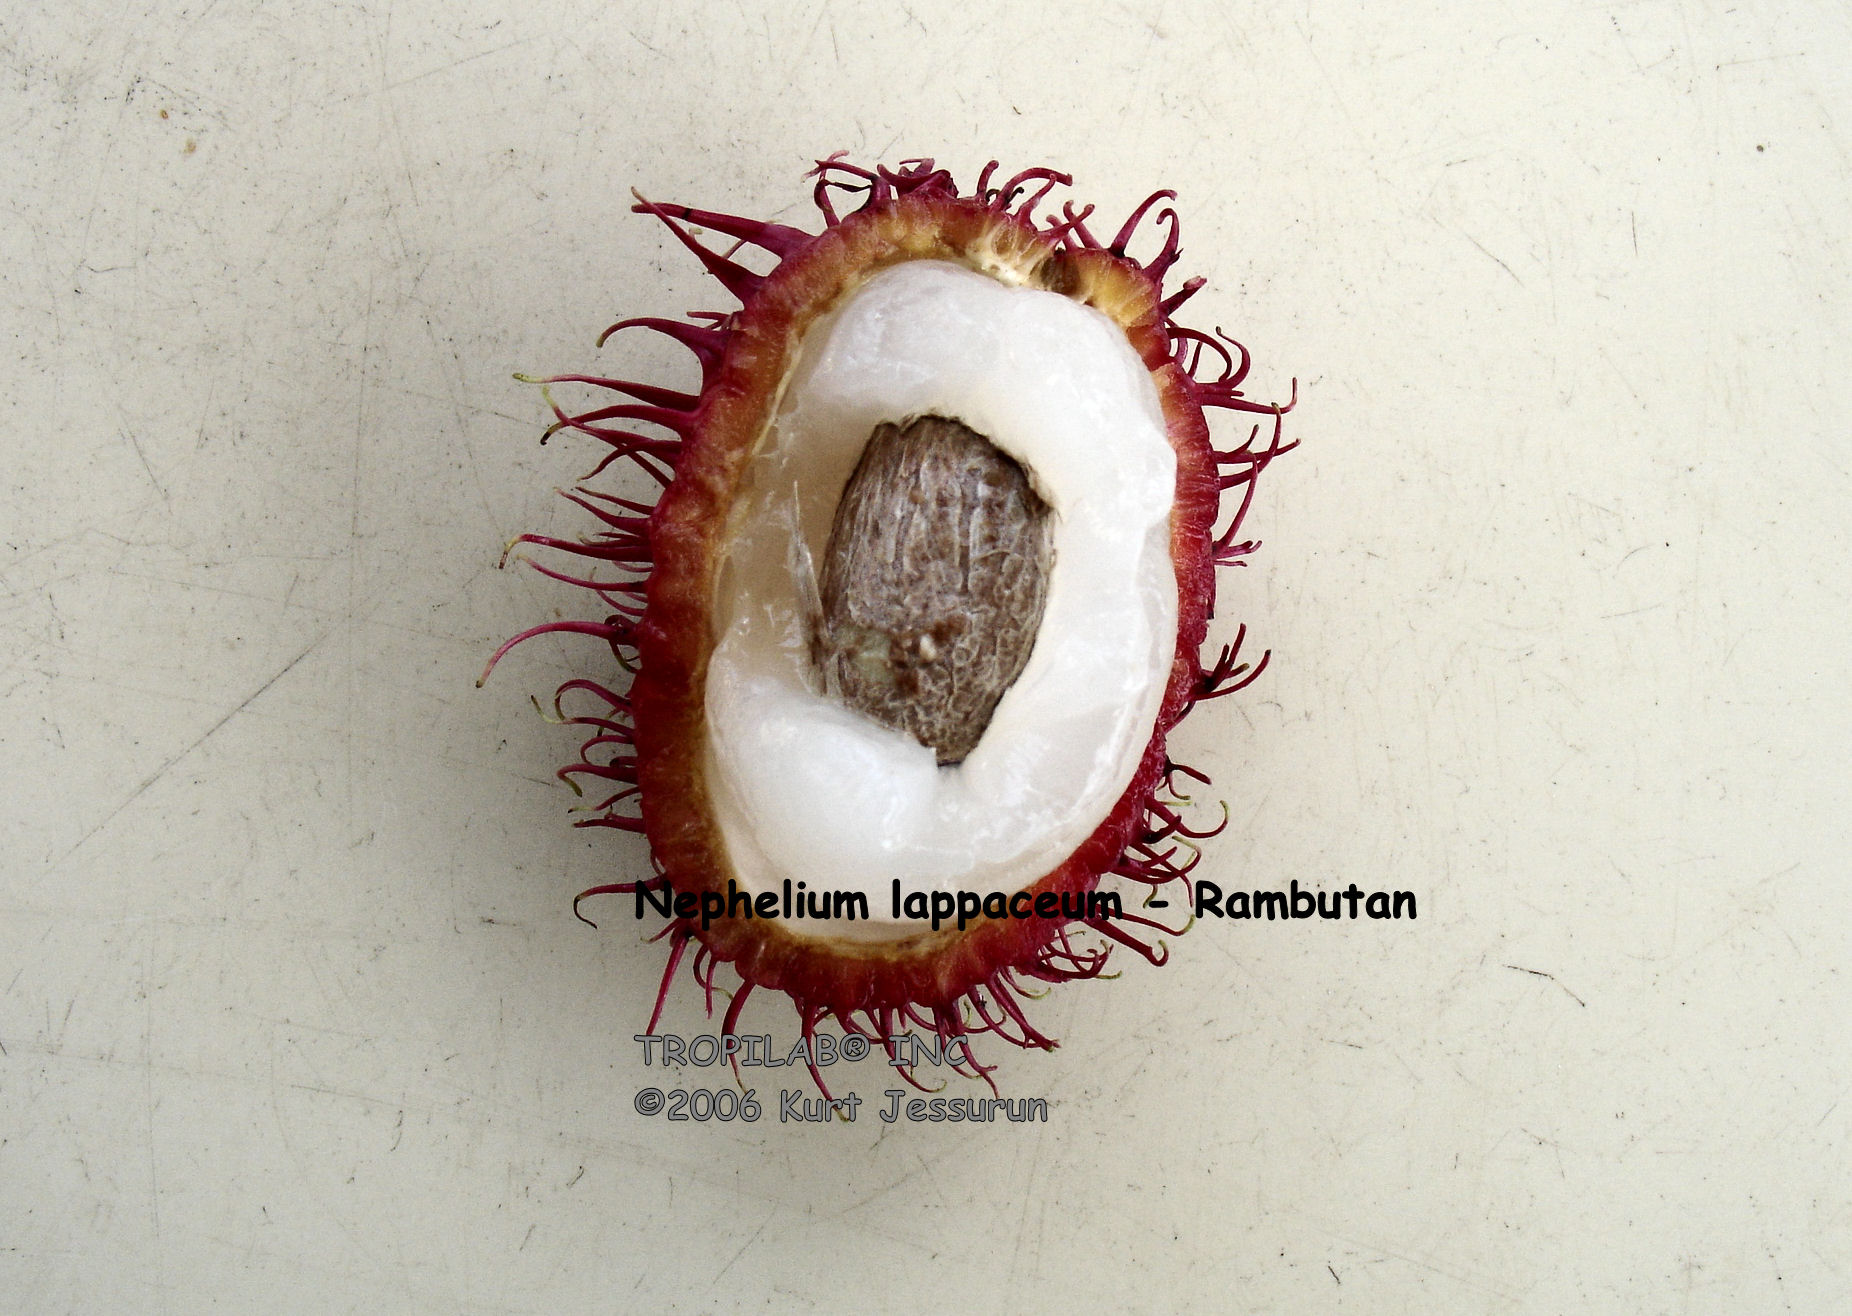 Nephelium lappaceum - Rambutan